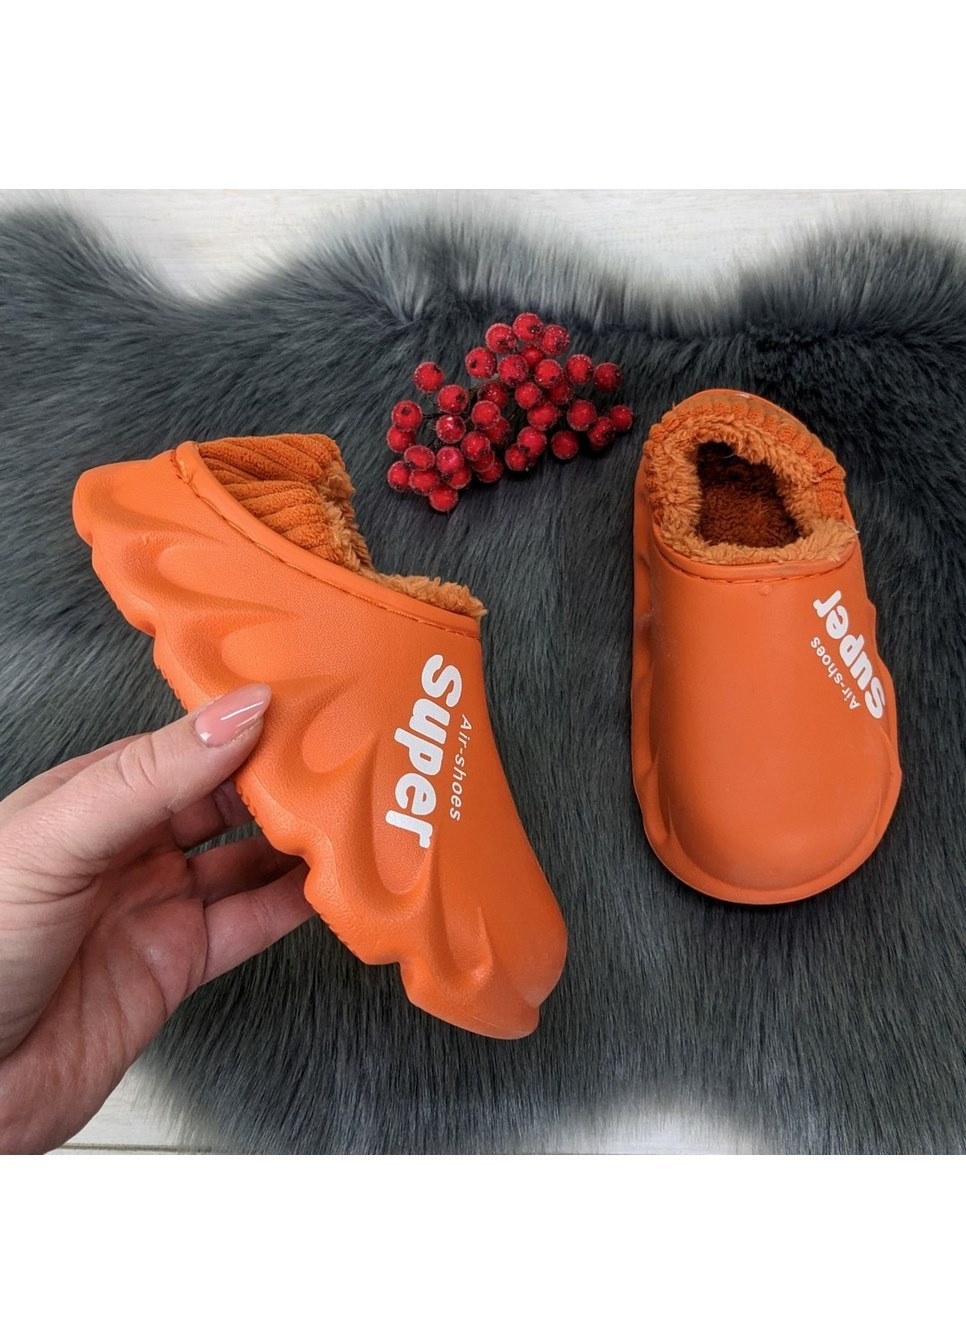 Оранжевые тапочки пена (галоши) на меху с мягким задником Lion